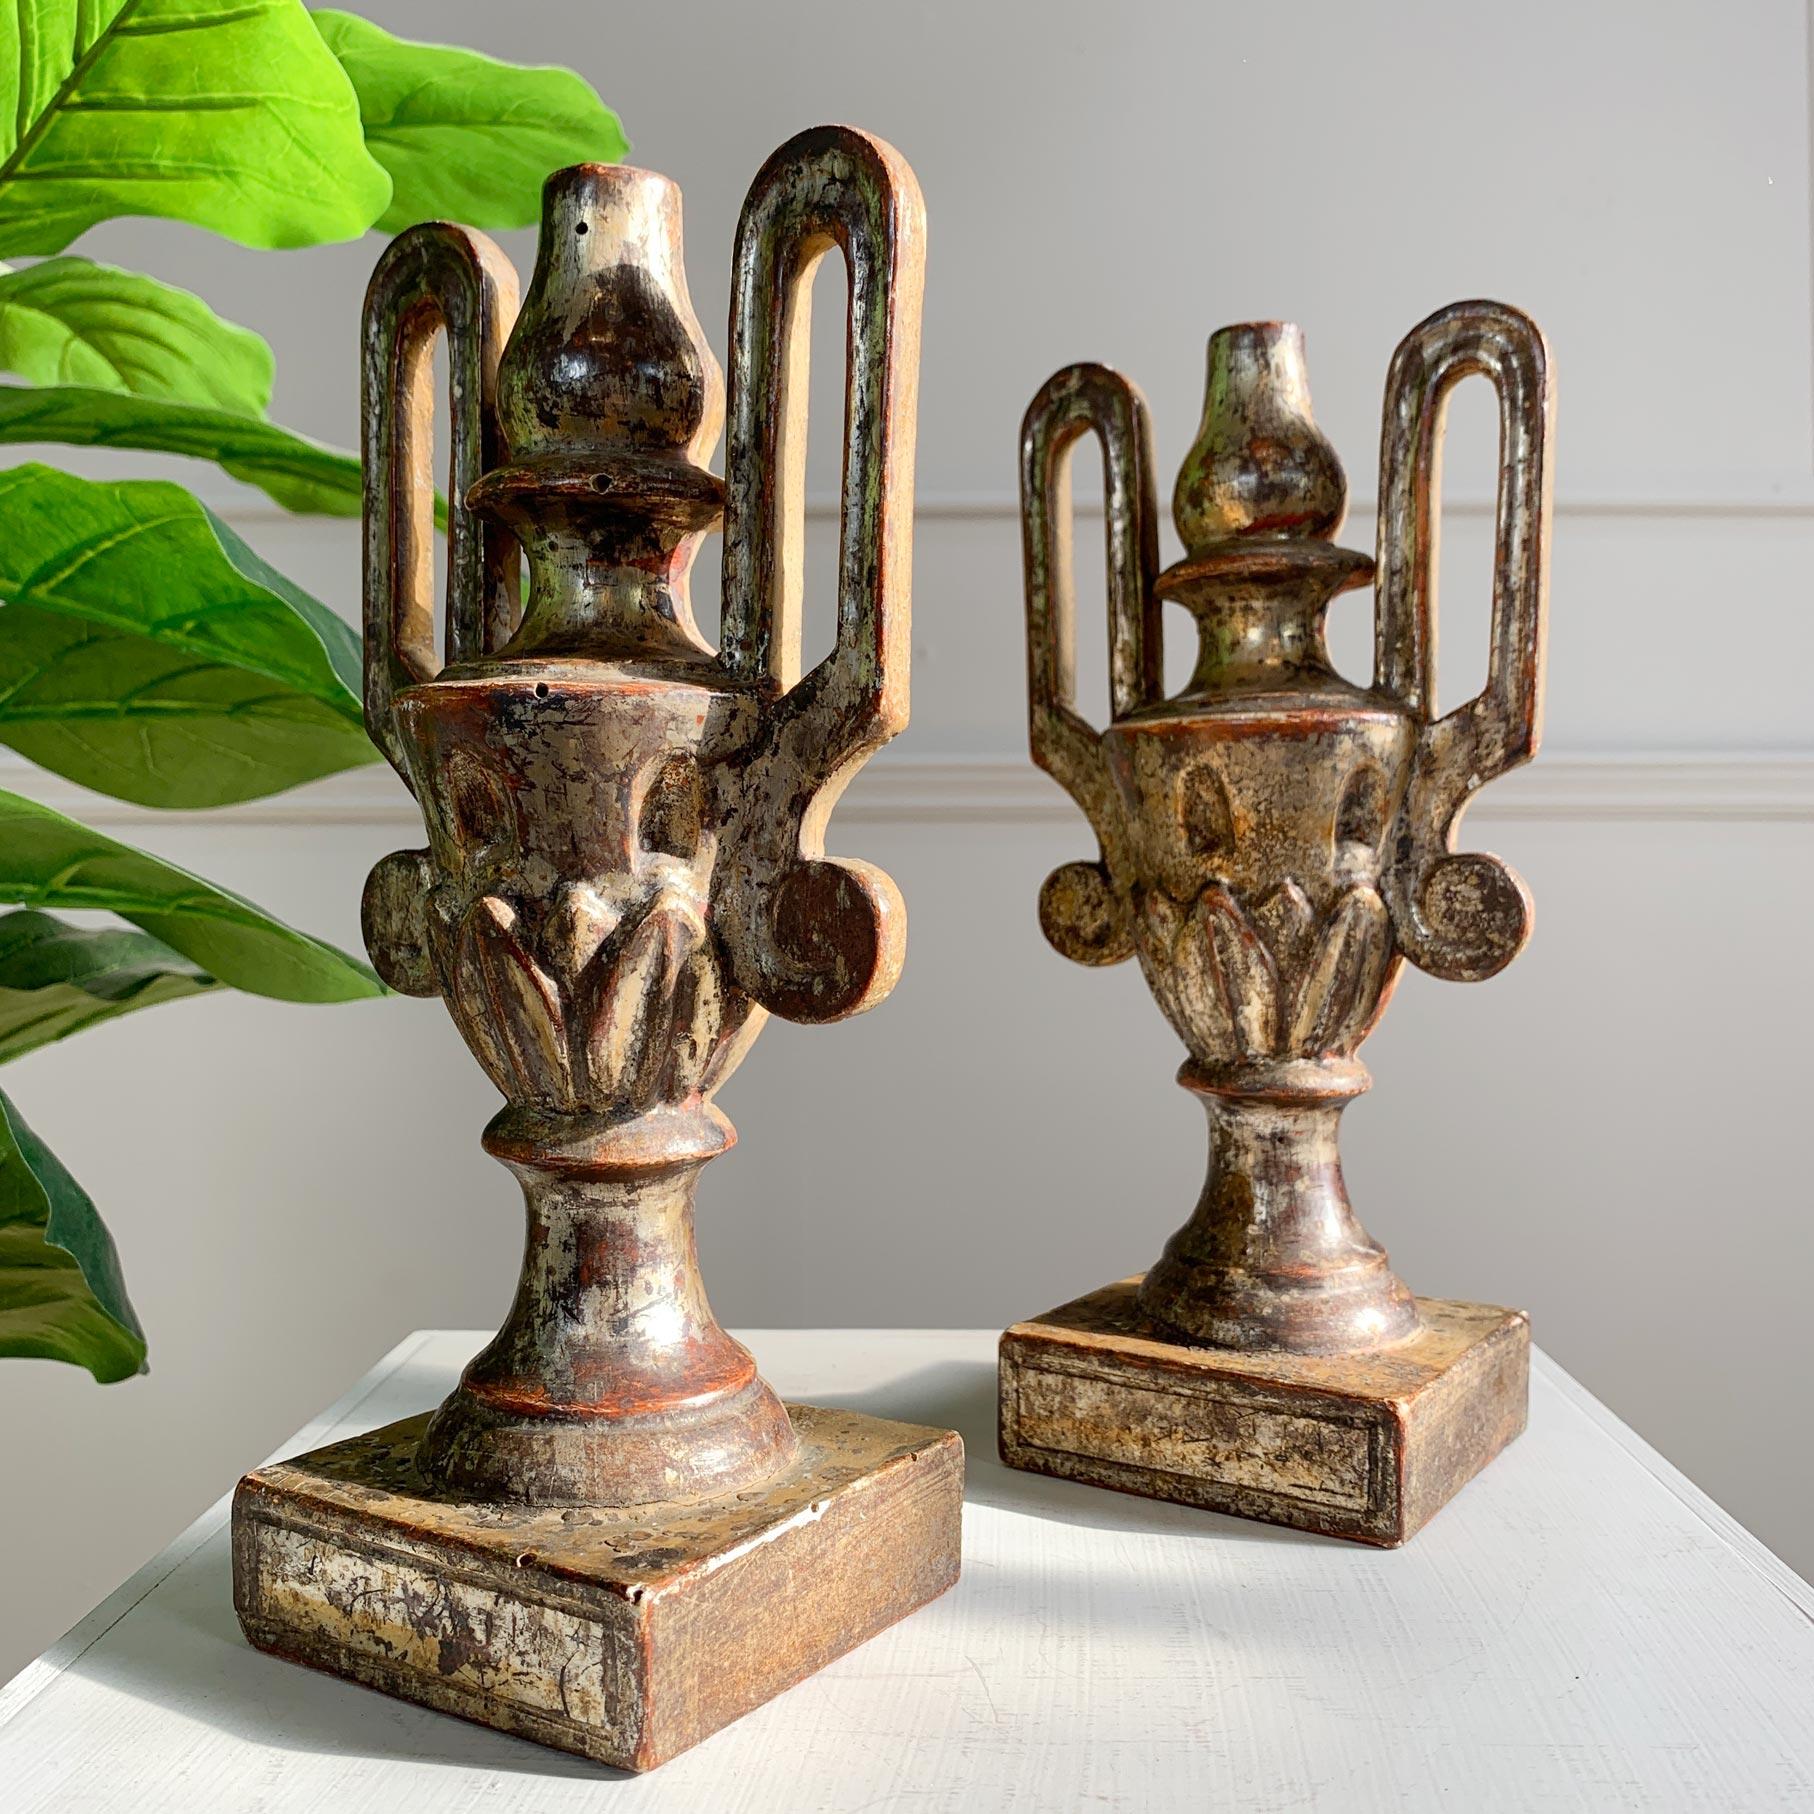 Paire de vases d'autel baroques allemands de la fin du XVIIIe siècle, en bois sculpté et doré, avec de petites zones de perte de dorure et de patine, comme on peut s'y attendre compte tenu de leur âge. Elles auraient été exposées dans l'autel d'une